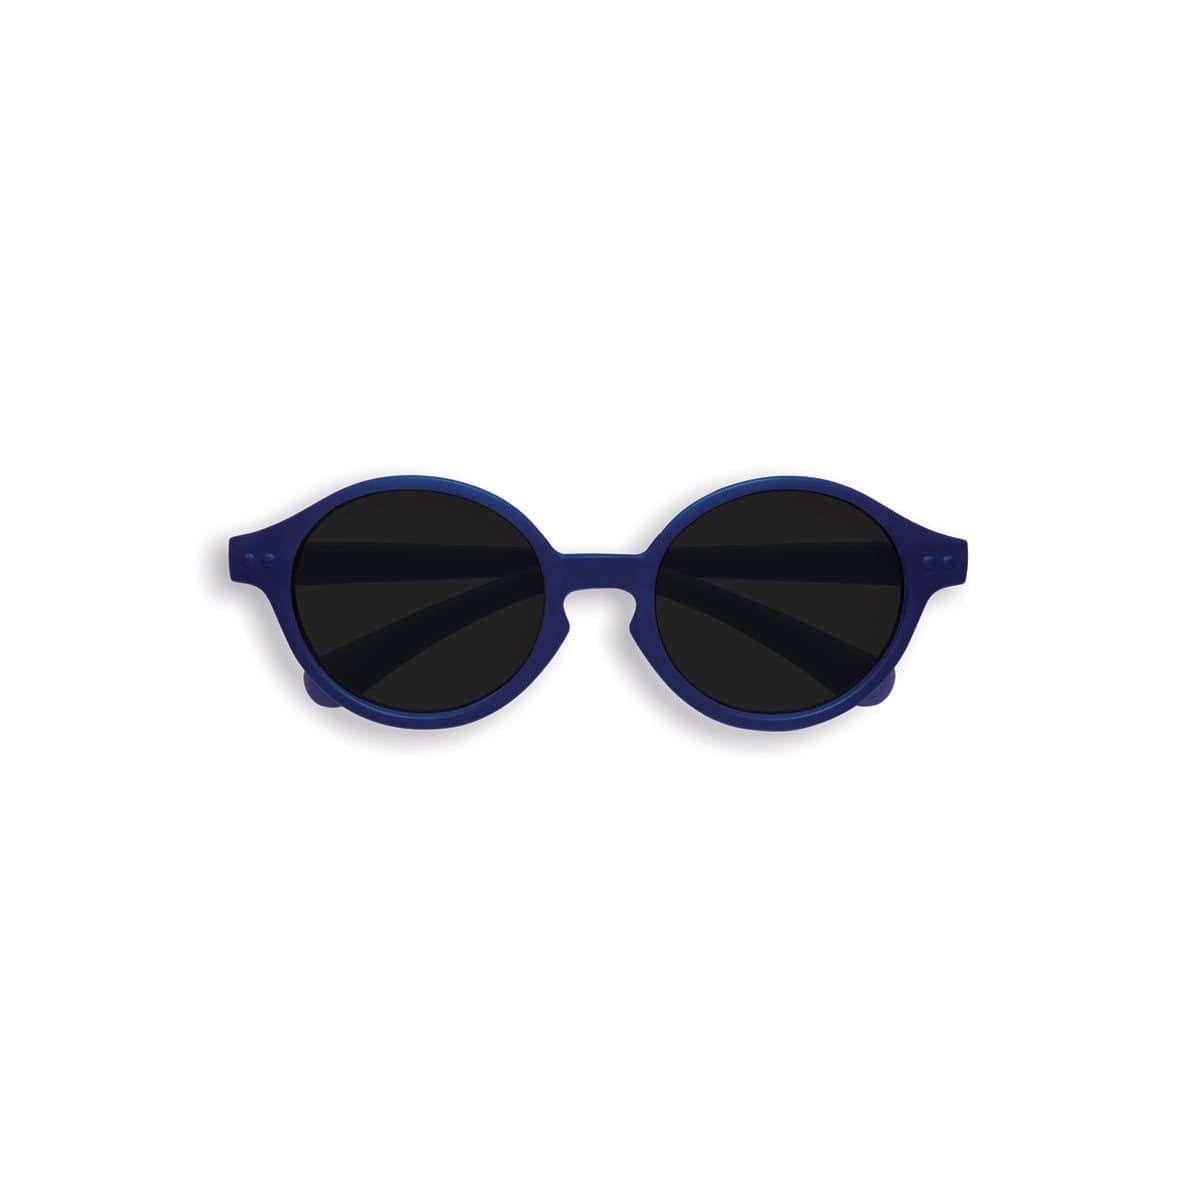 Izipizi Accessory Sunglasses Denim Blue Izipizi Sun Kids Collection - 9 to 36 months